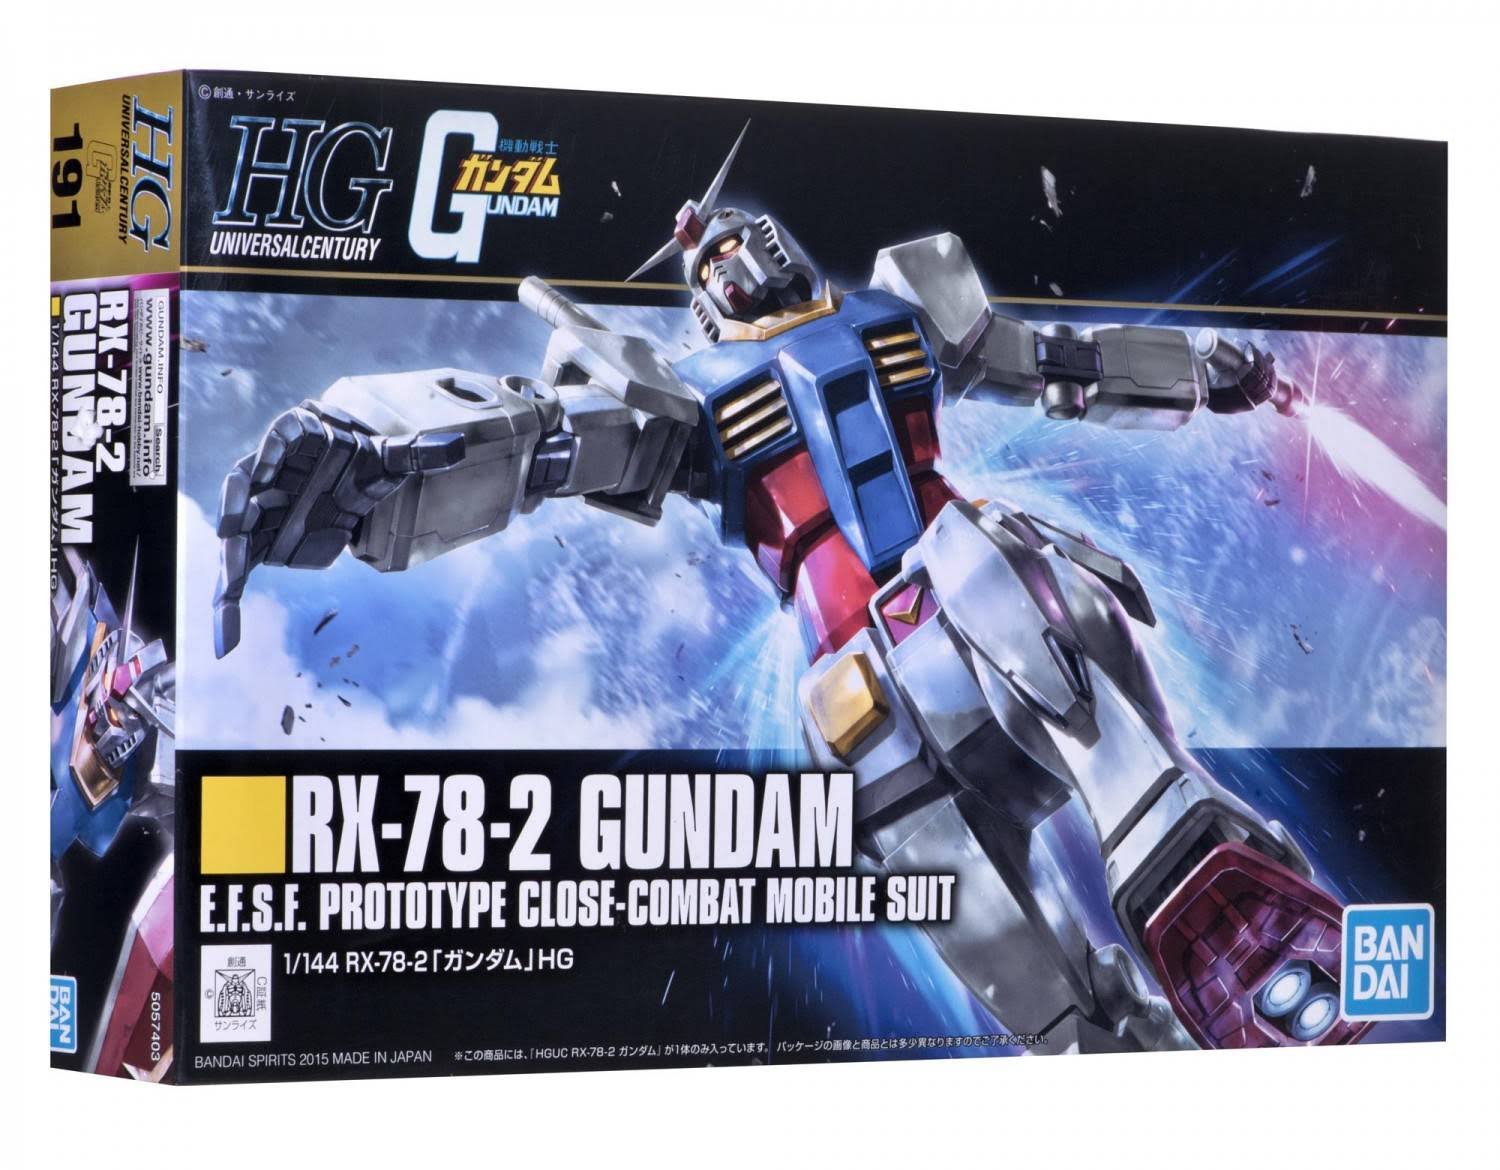 Bandai HGUC 1/144 RX-78-2 Gundam Plastic Model